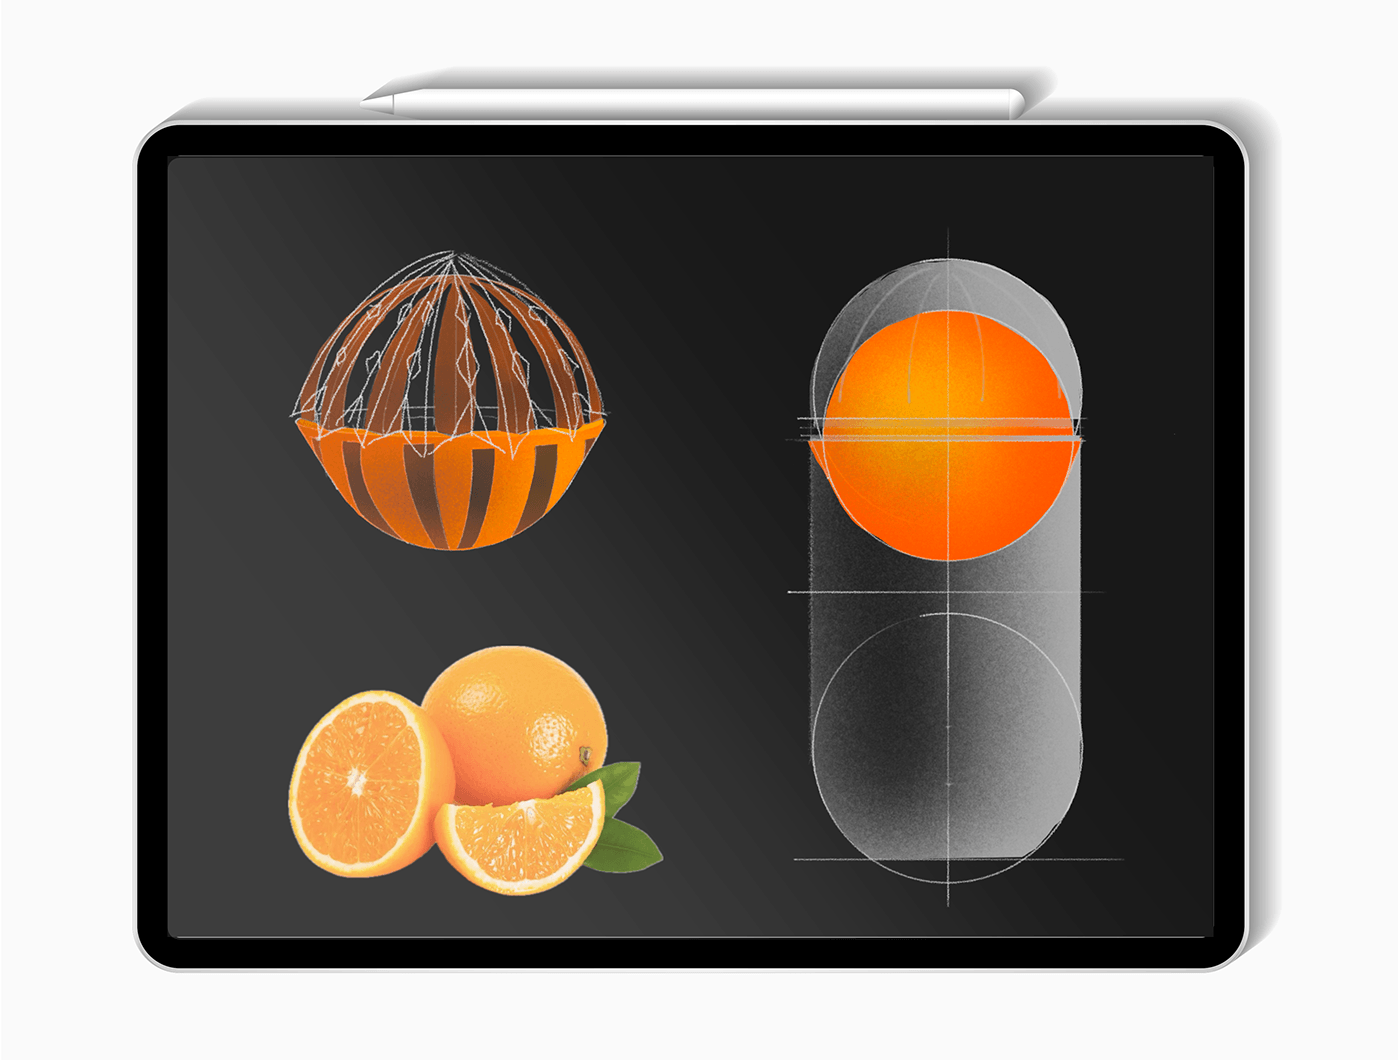 Juicer product design  citrus juicer design Rhinoceros Render visualization cup drink Citrus Fruits